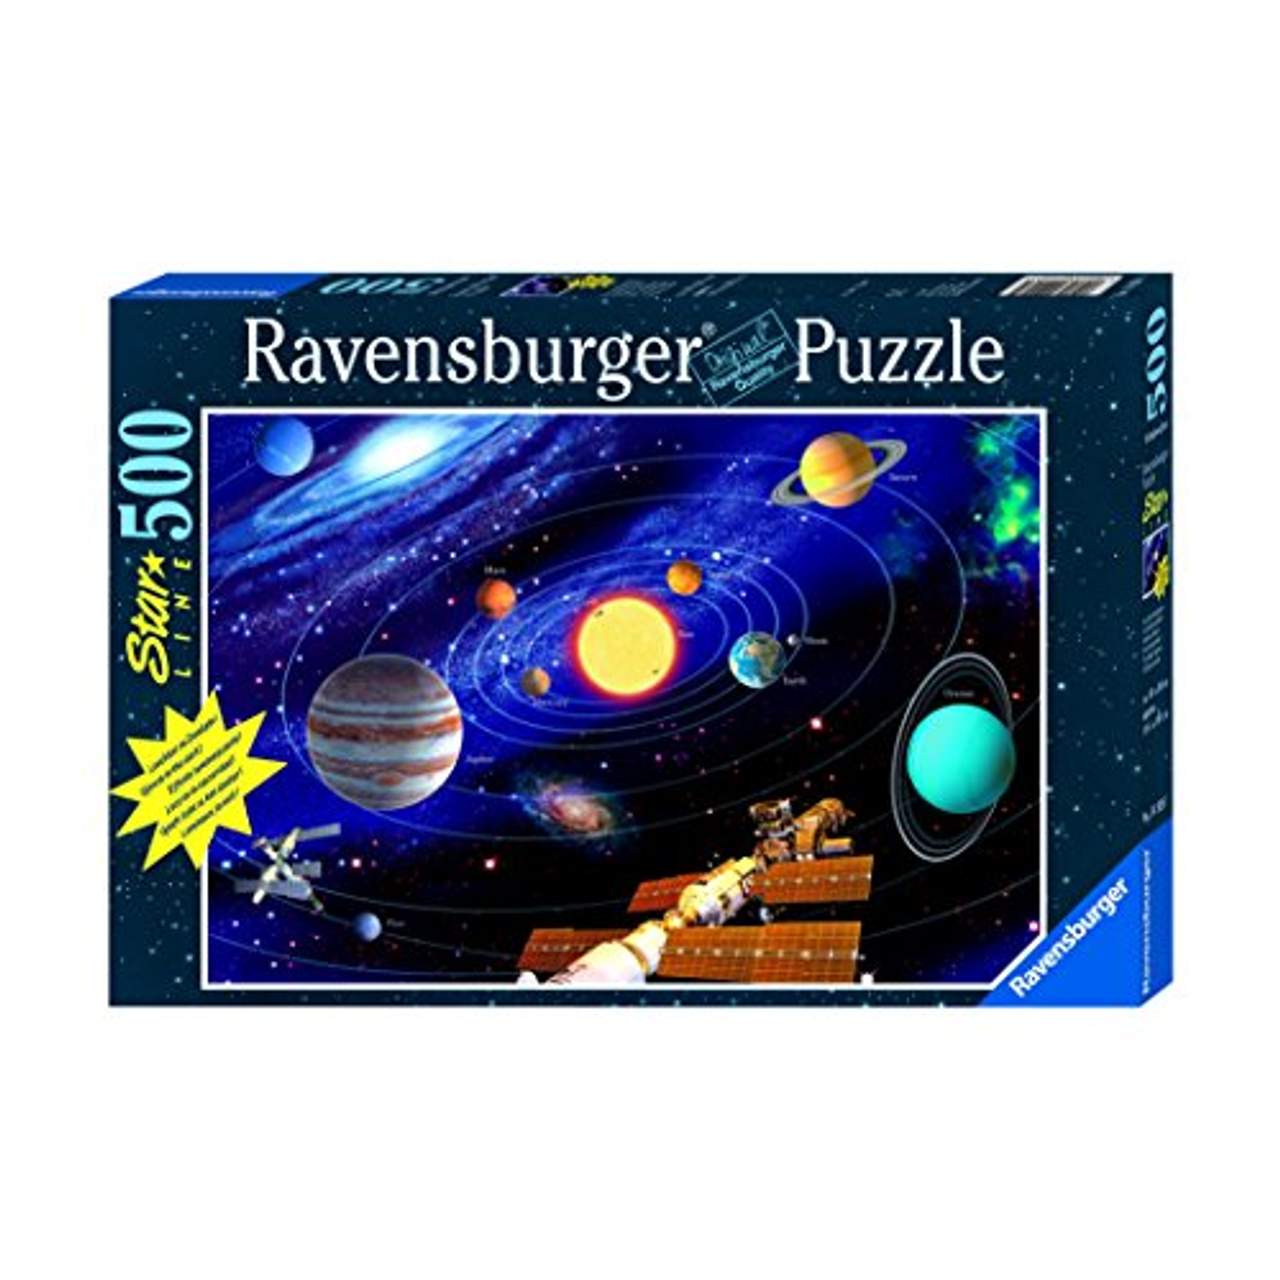 Ravensburger 15047 Im Zauber des Mondlichts 500 Teile Starline Puzzle 